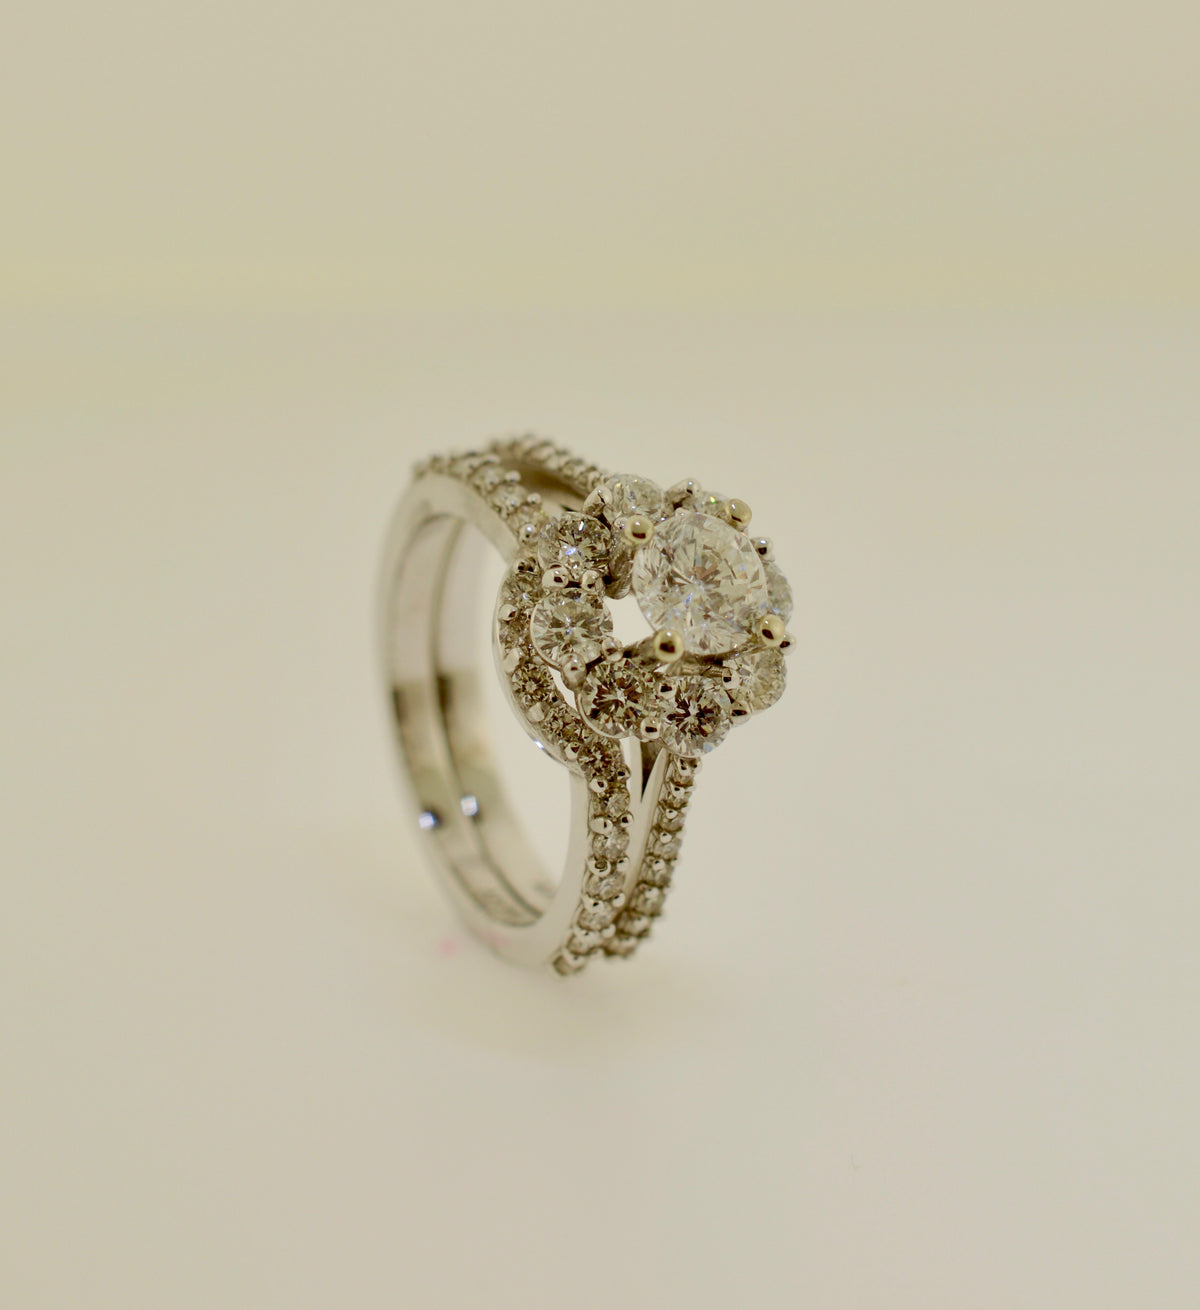 14K White Gold 2.02 Carat Total Weight Diamond Engagement Ring Set